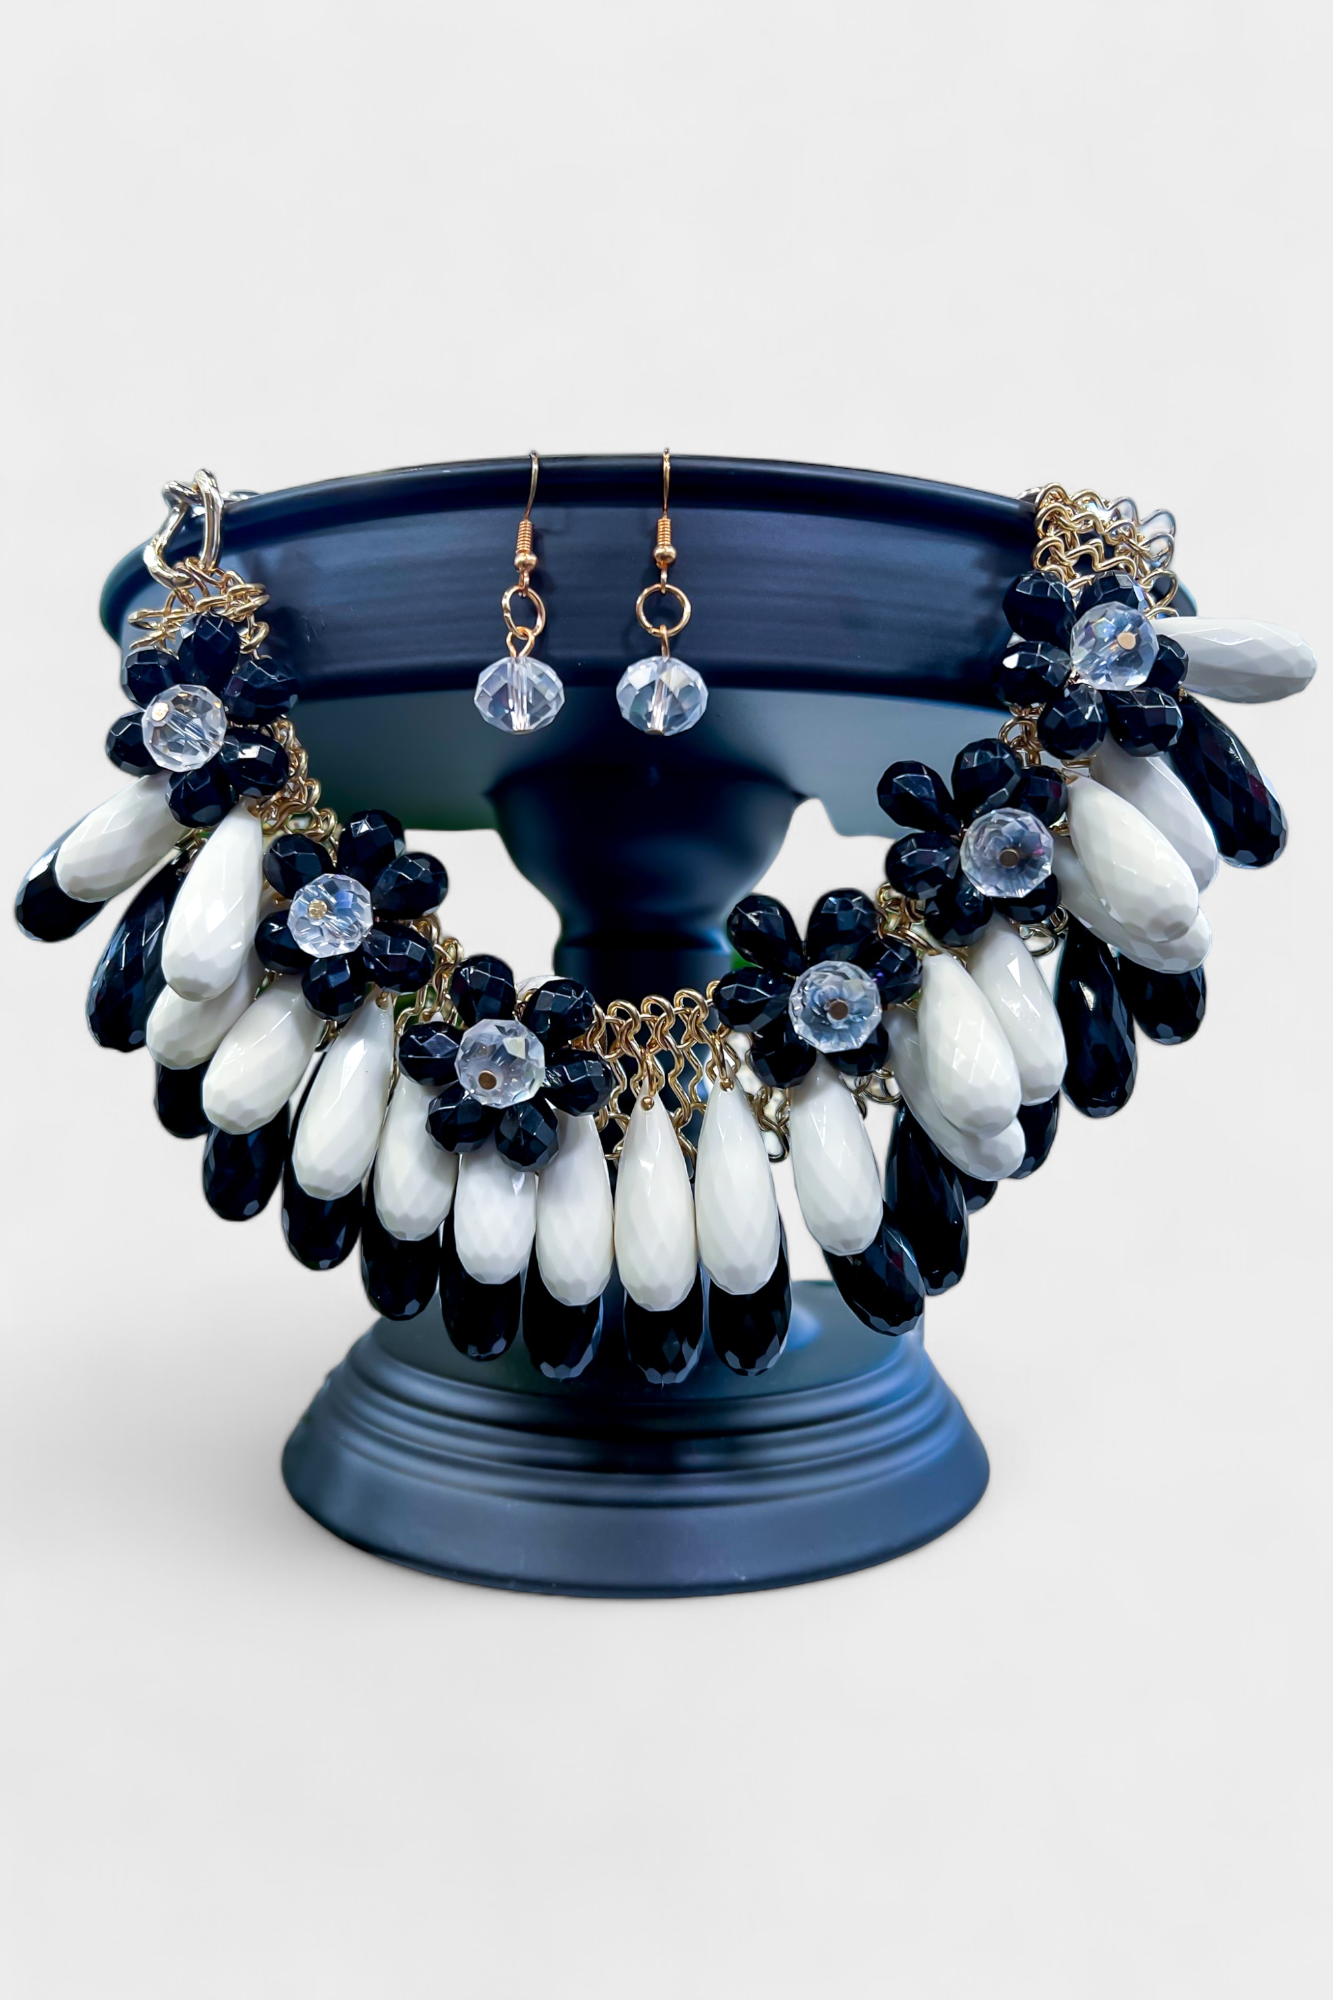 Black & White Fringe Beads Necklace Set